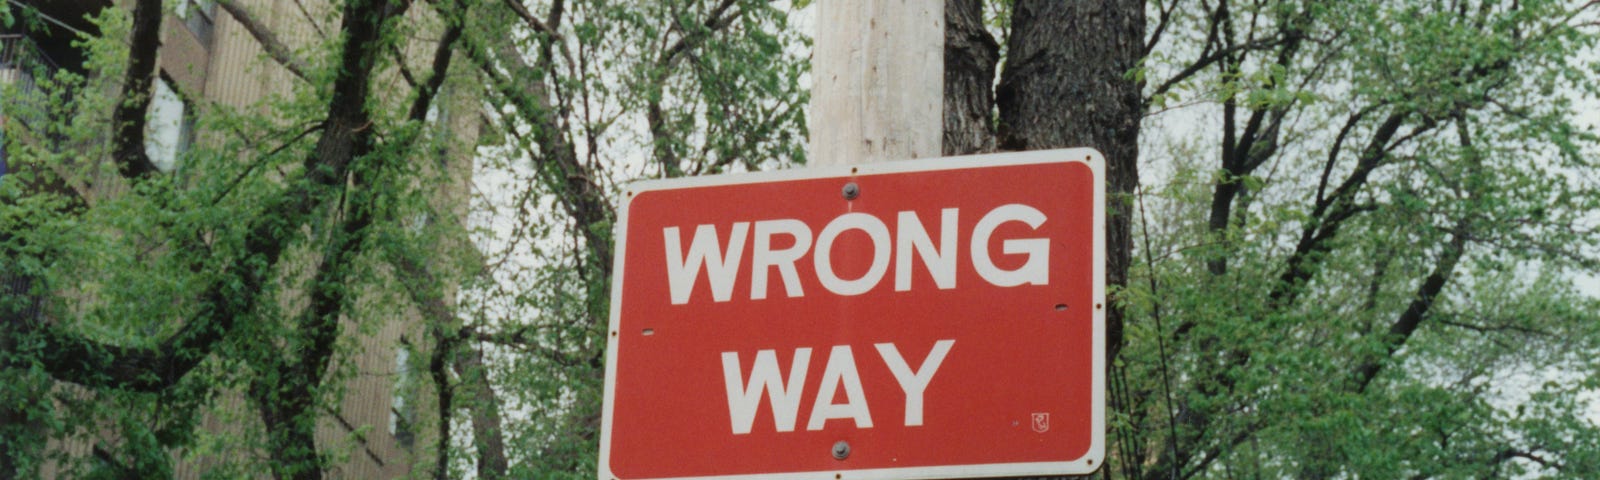 Wrong Way roadsign